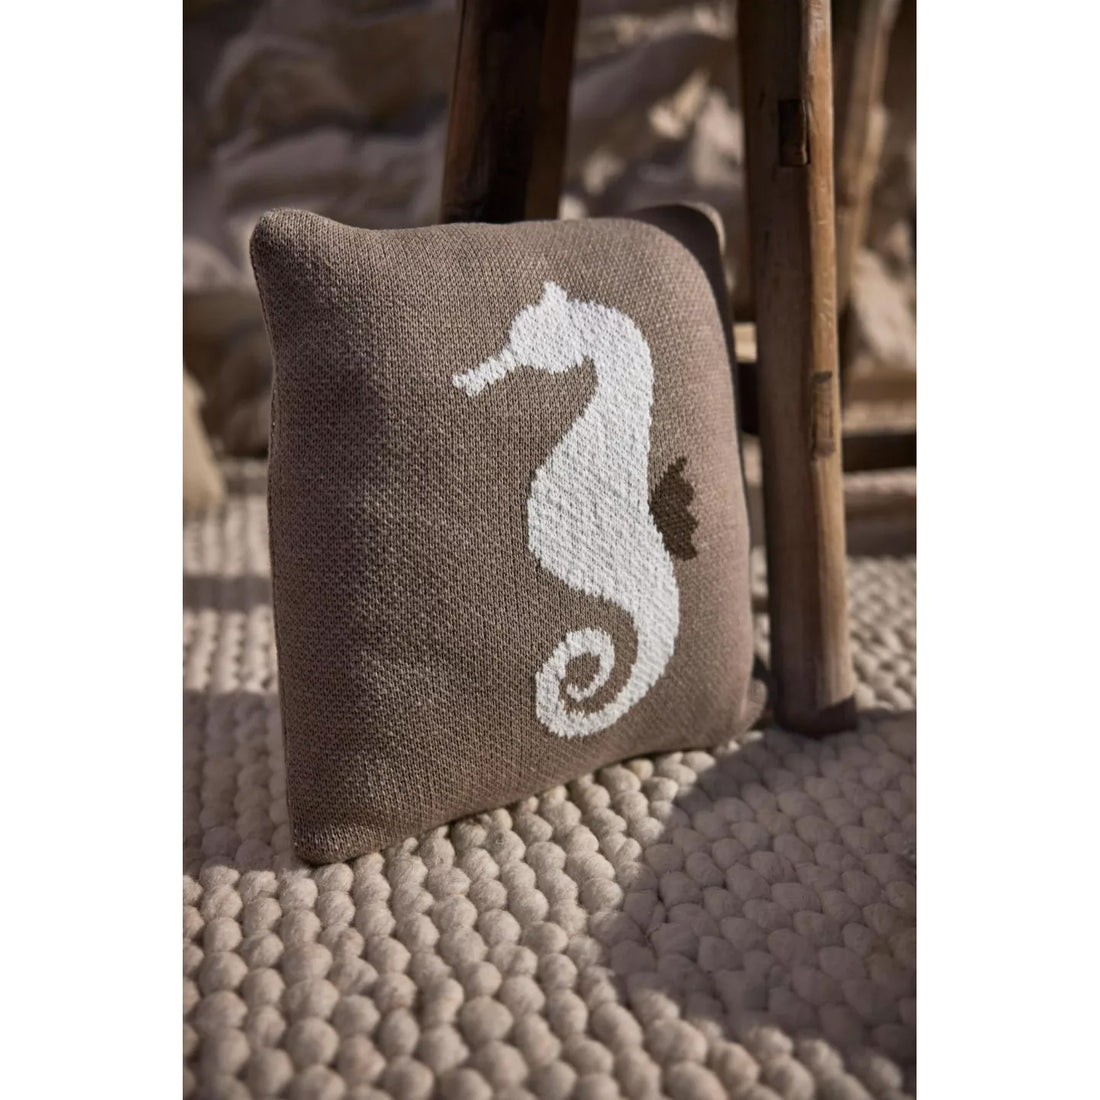 quax-knitted-cushion-30x30-cm-seahorse-quax-04kcu30-shr